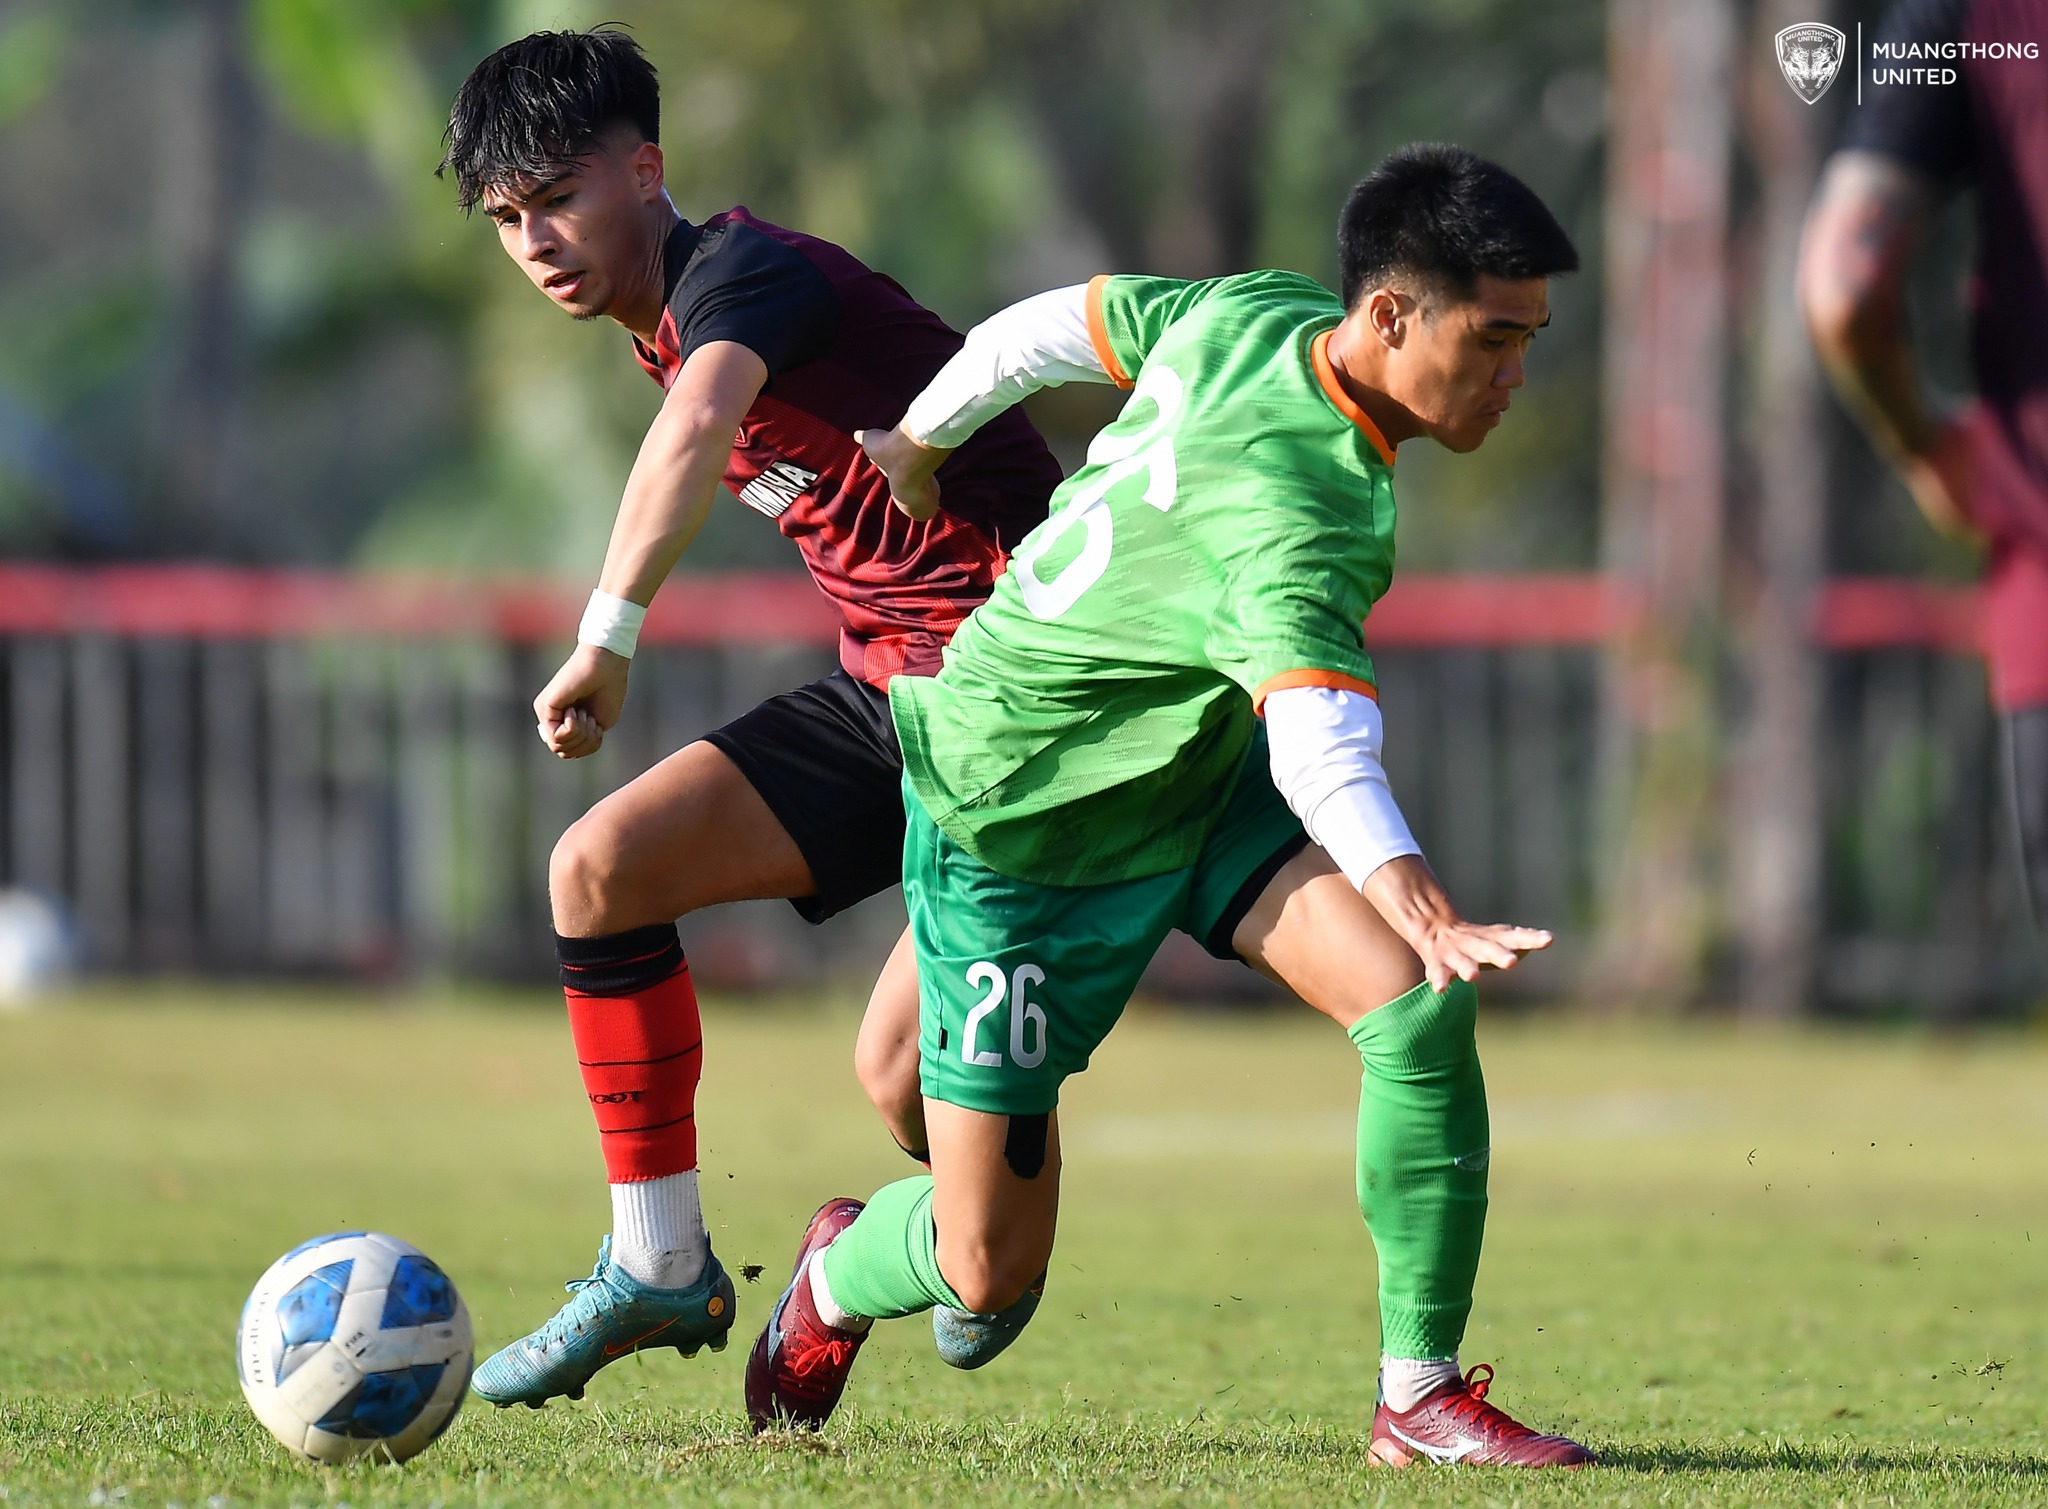  Muangthong United vs Lao